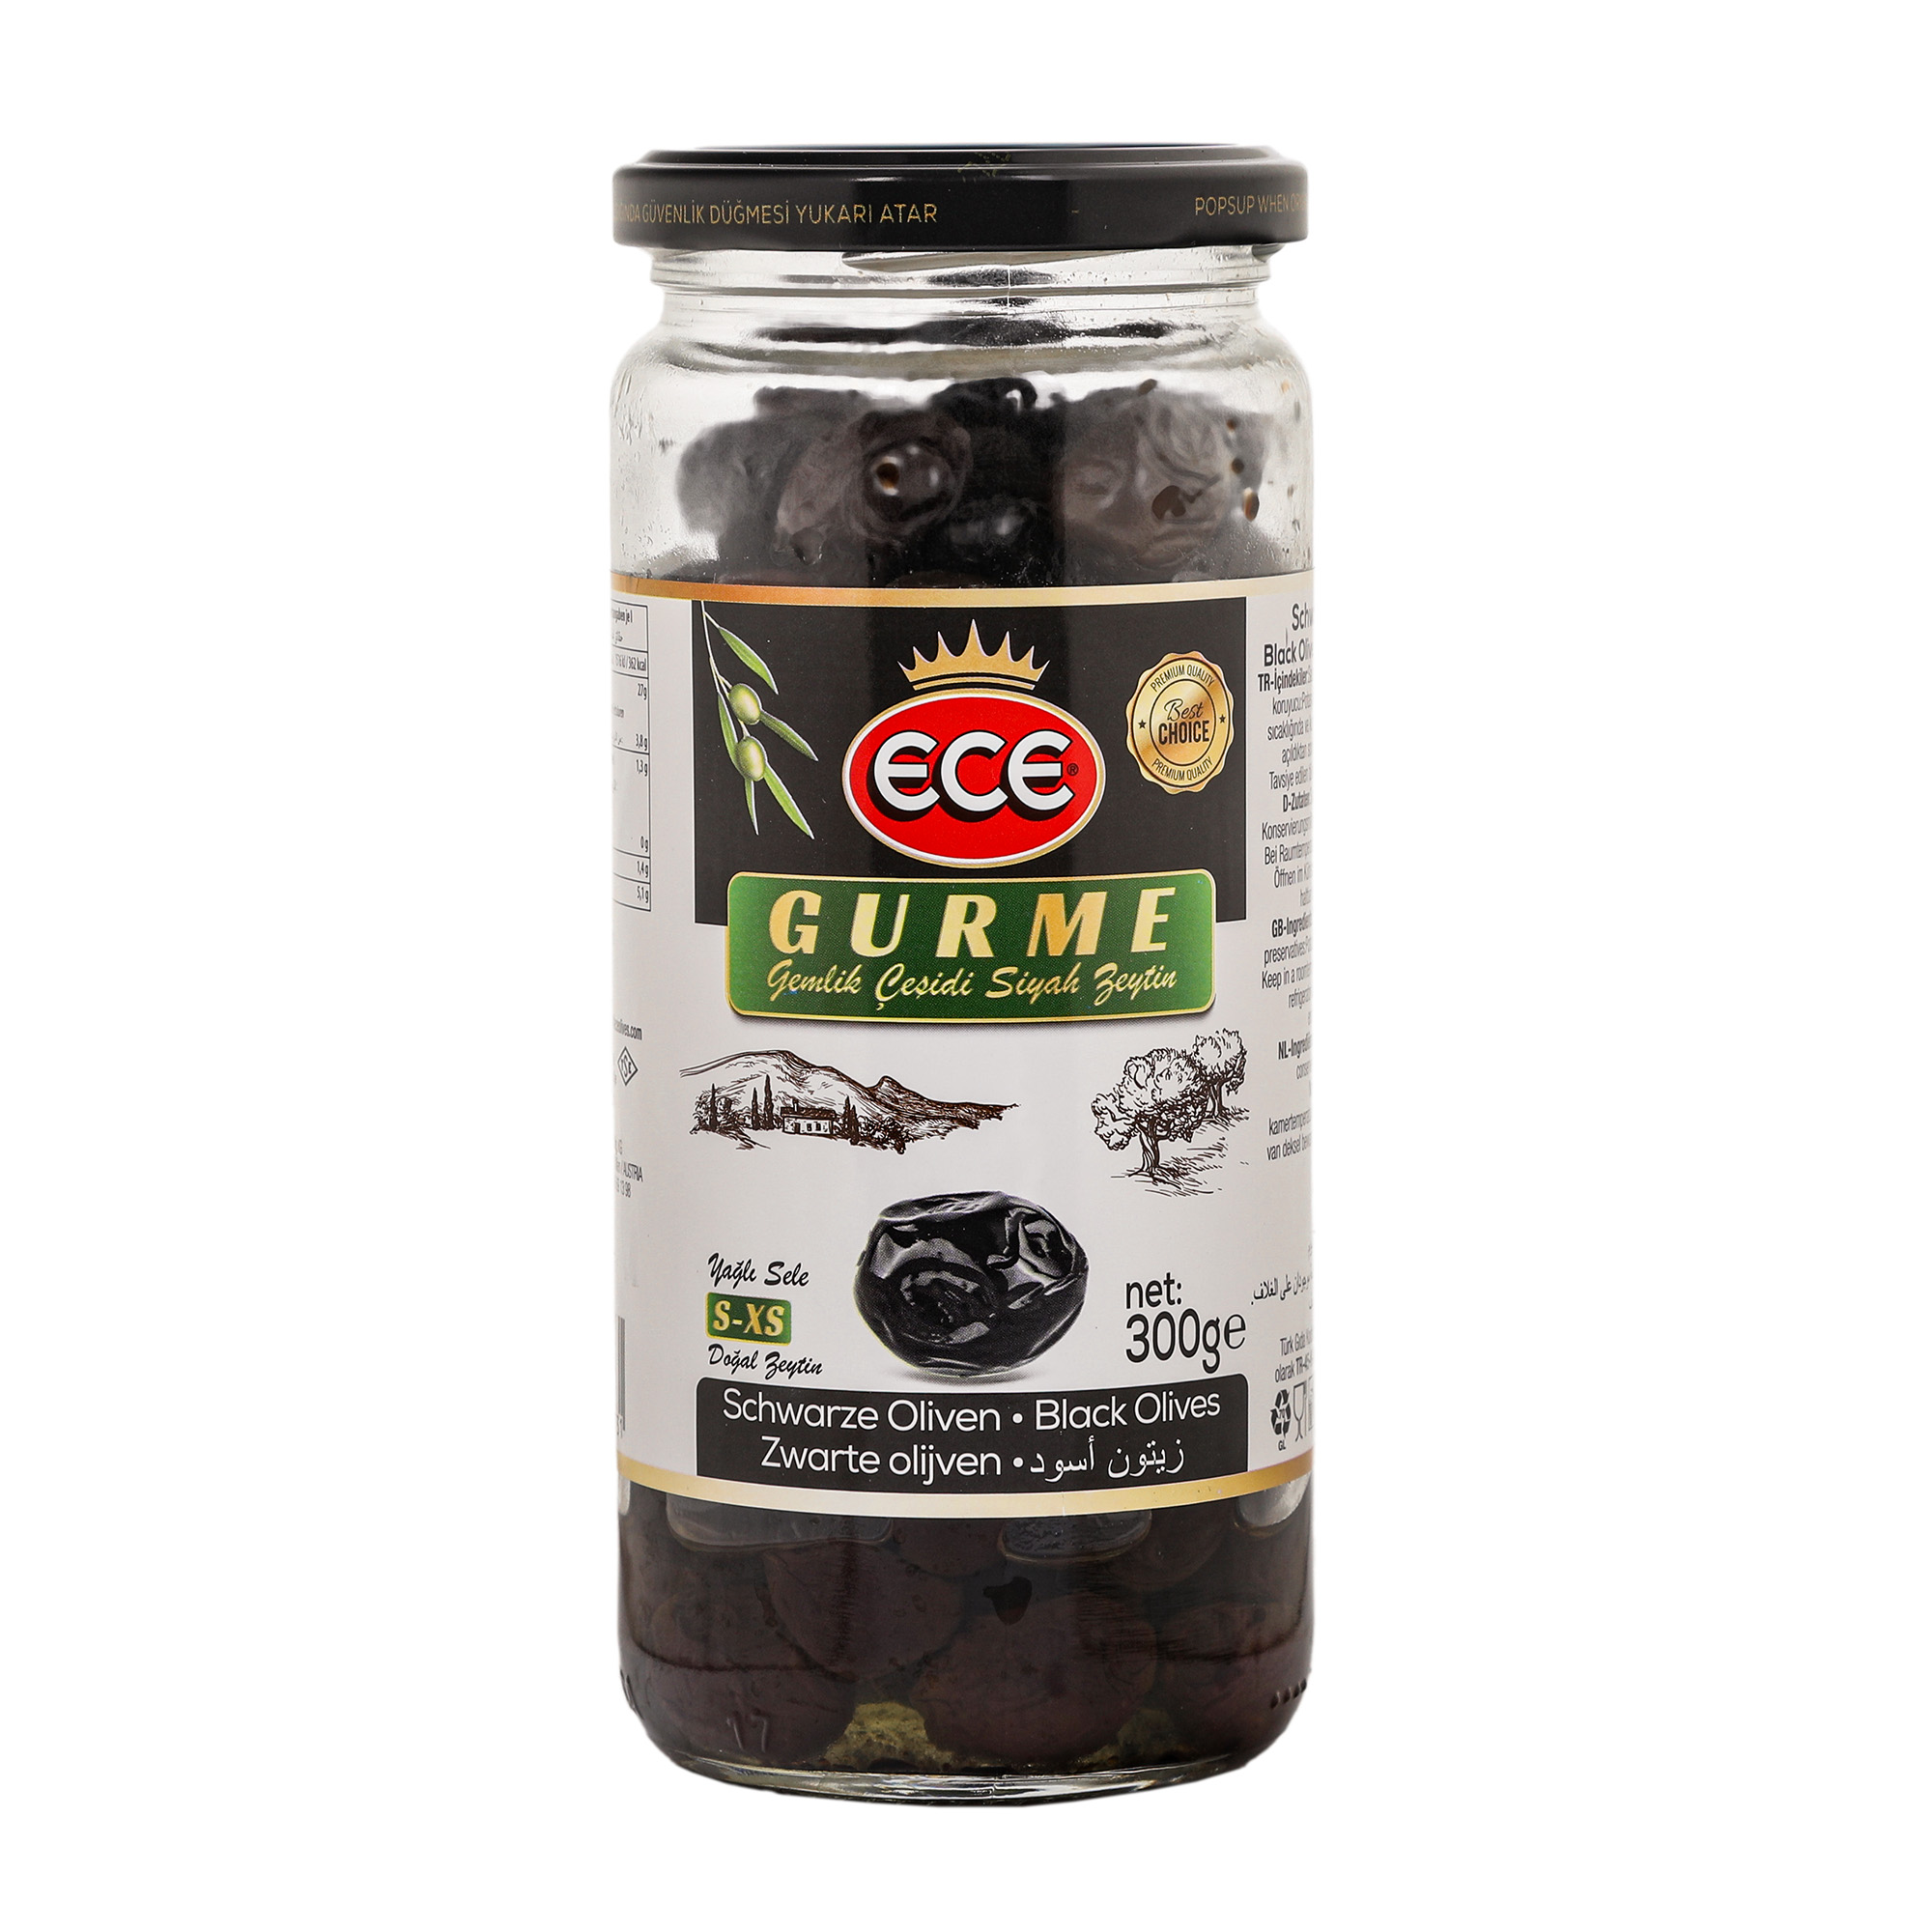 Оливки черные Ece Gurme в масле с косточкой, 300 г оливки на гриле spil в масле 200 г